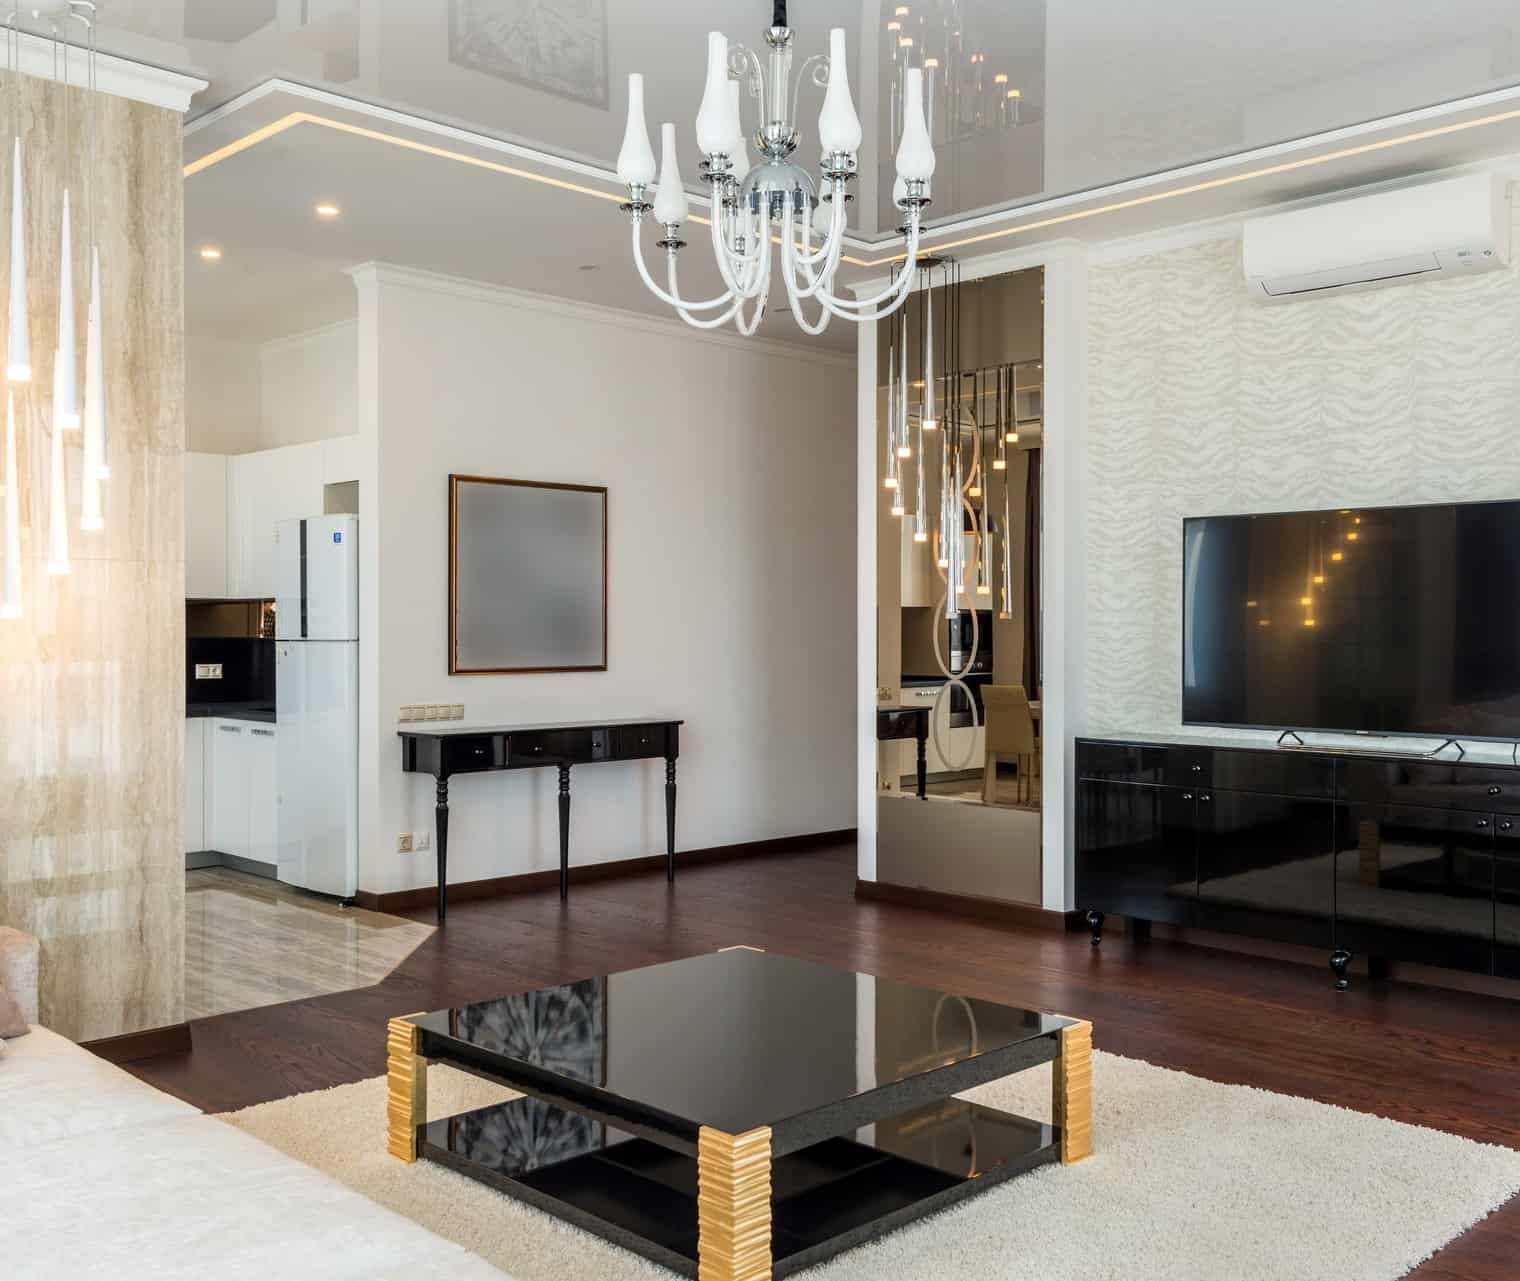 Luksuriøs stue med guld og sorte farver. En moderne fortolkning af art deco indretningsstilen.